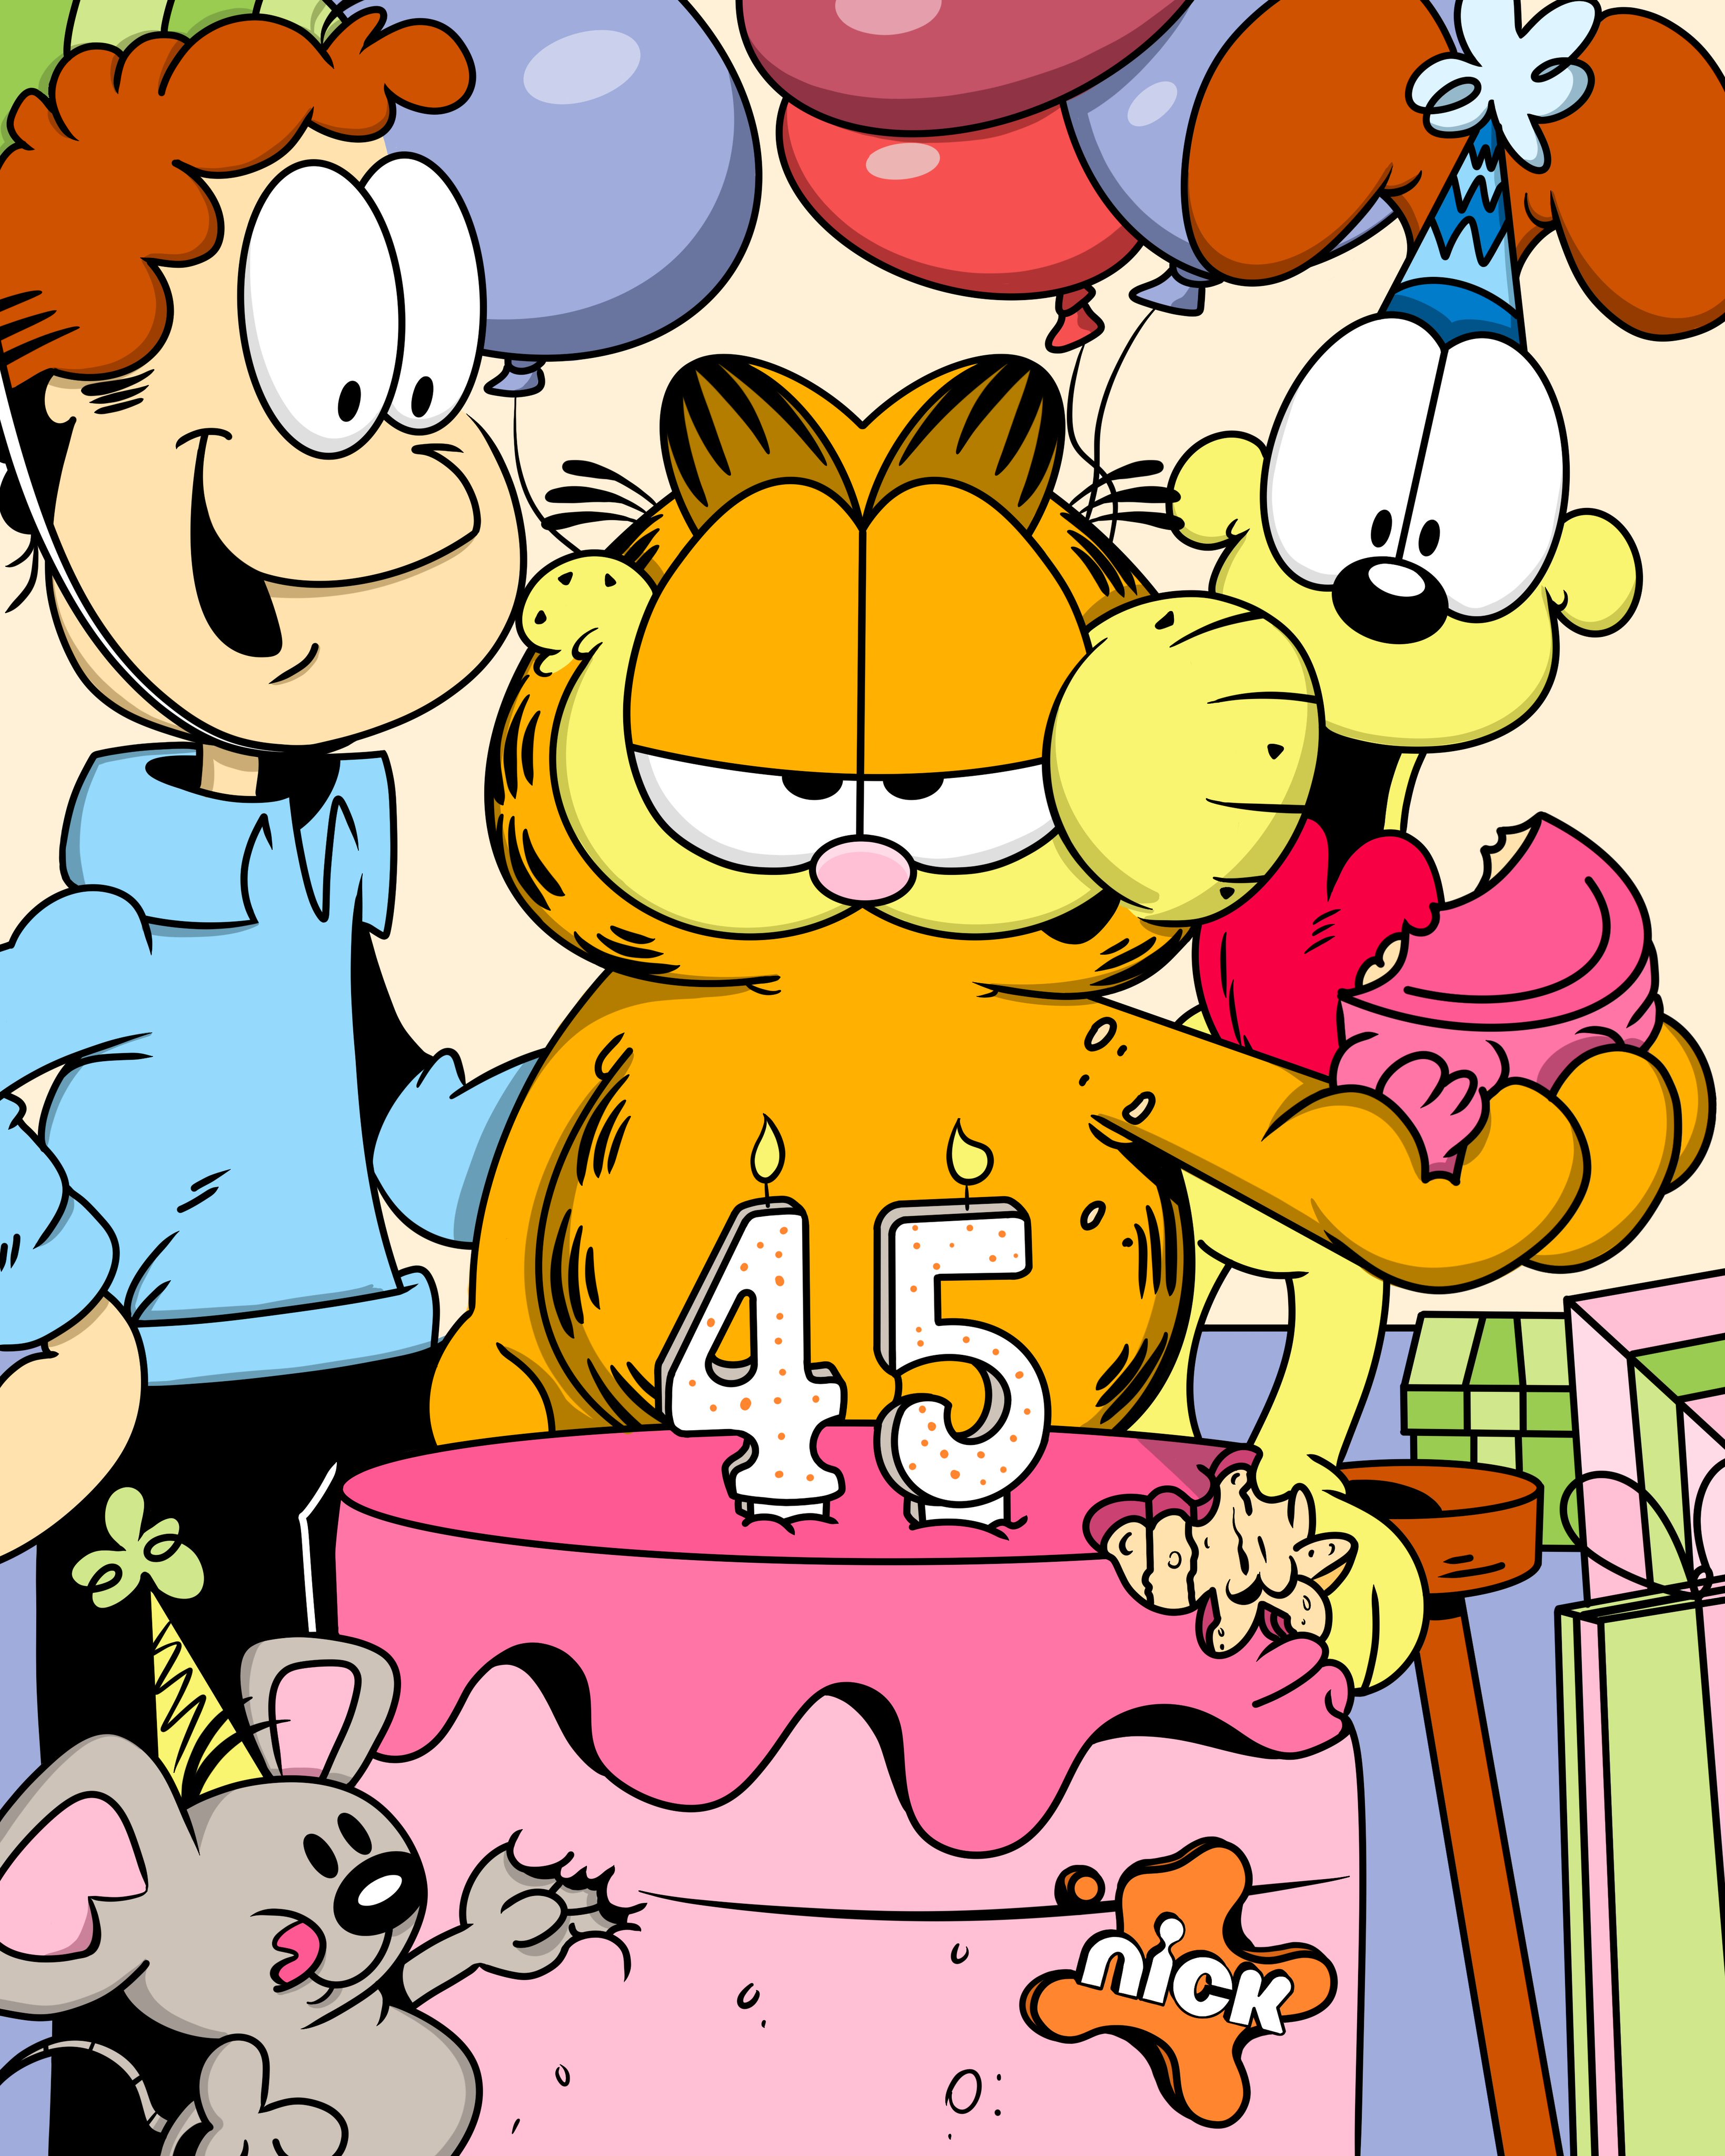 Garfield celebrando sus 45 anos de nacimiento con su amo Jon Arbuckle, el perro Odie, imagen publicada en el twitter de GARFIELD